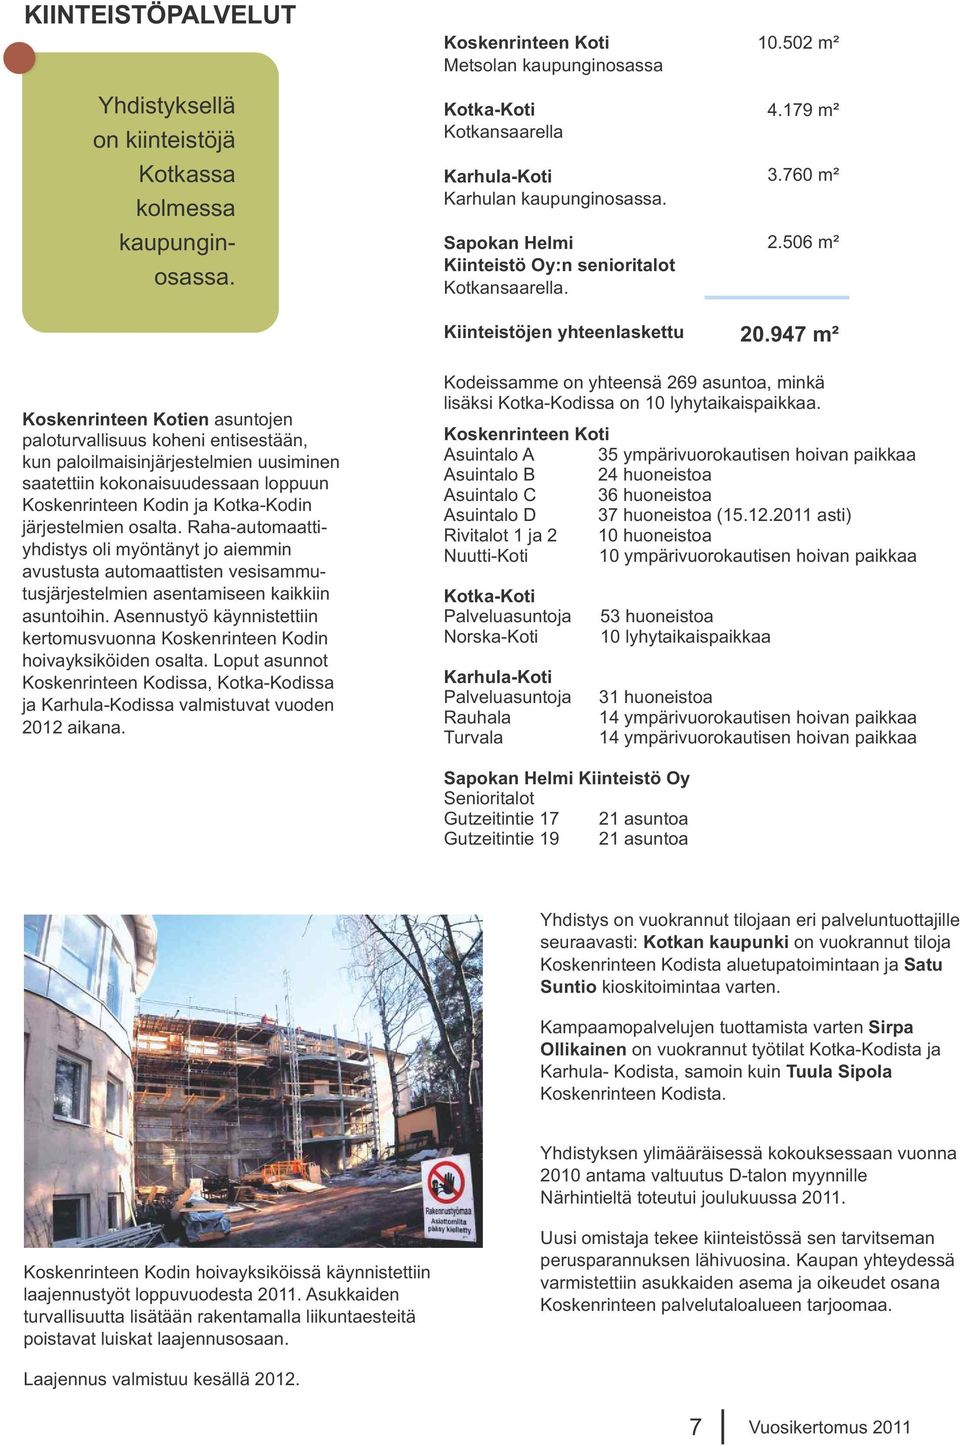 947 m² Koskenrinteen Kotien asuntojen paloturvallisuus koheni entisestään, kun paloilmaisinjärjestelmien uusiminen saatettiin kokonaisuudessaan loppuun Koskenrinteen Kodin ja Kotka-Kodin